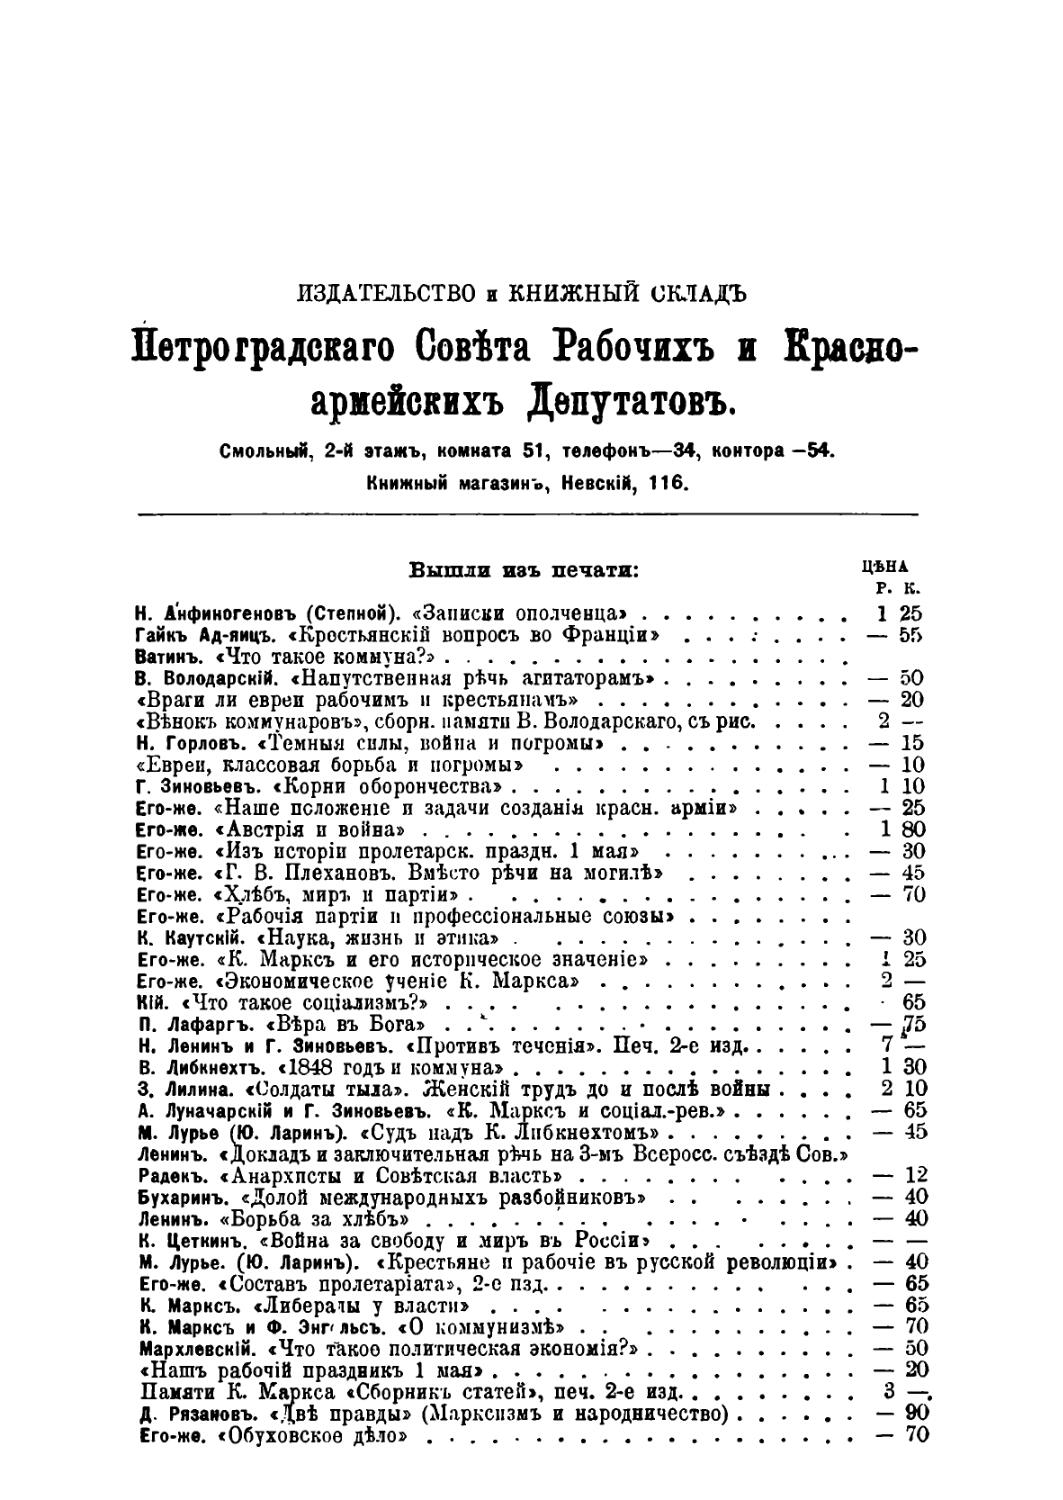 Книги издательства Петроградского совета